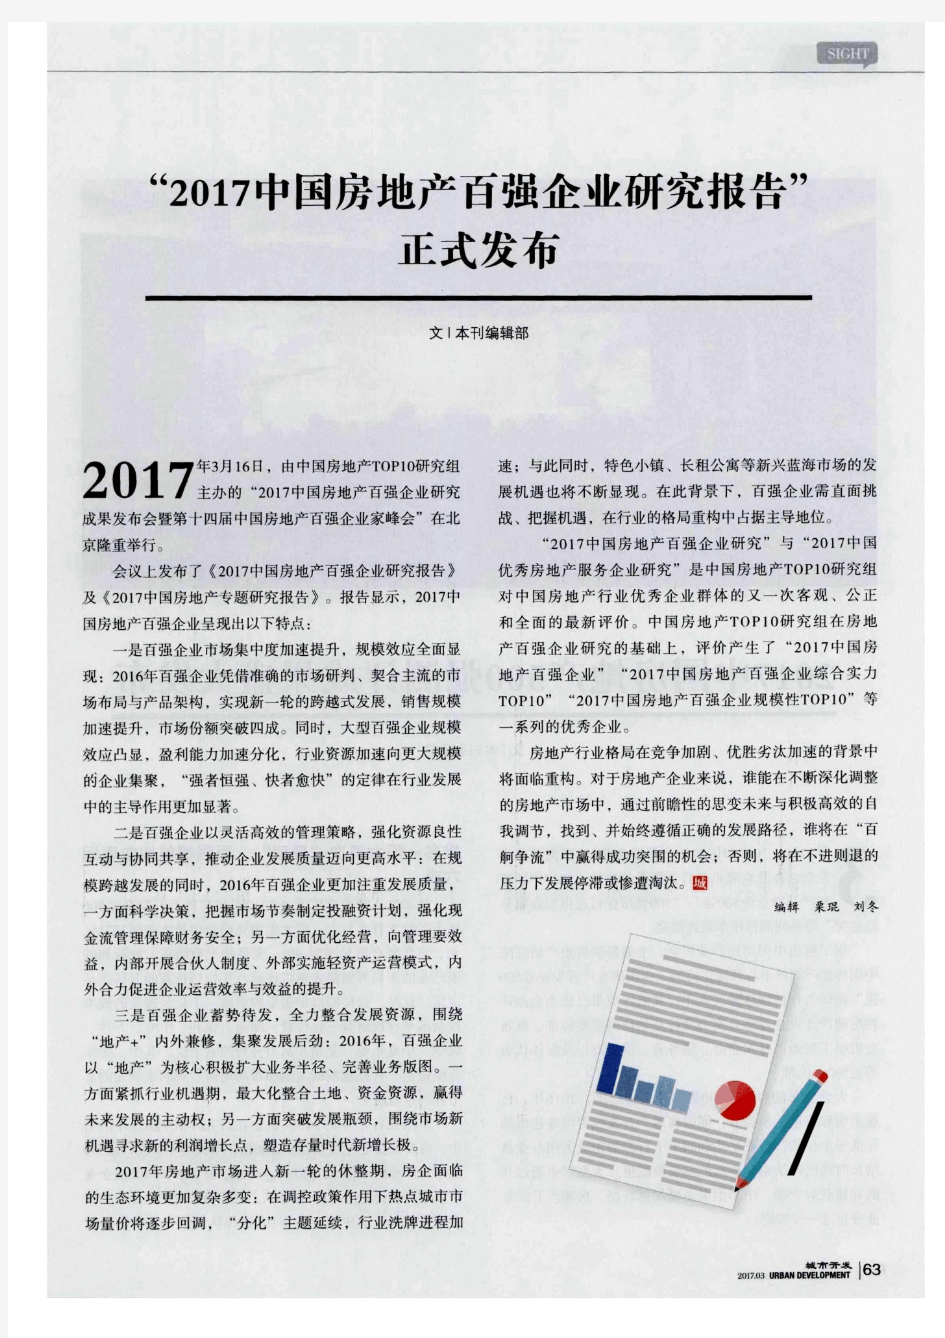 “2017中国房地产百强企业研究报告”正式发布